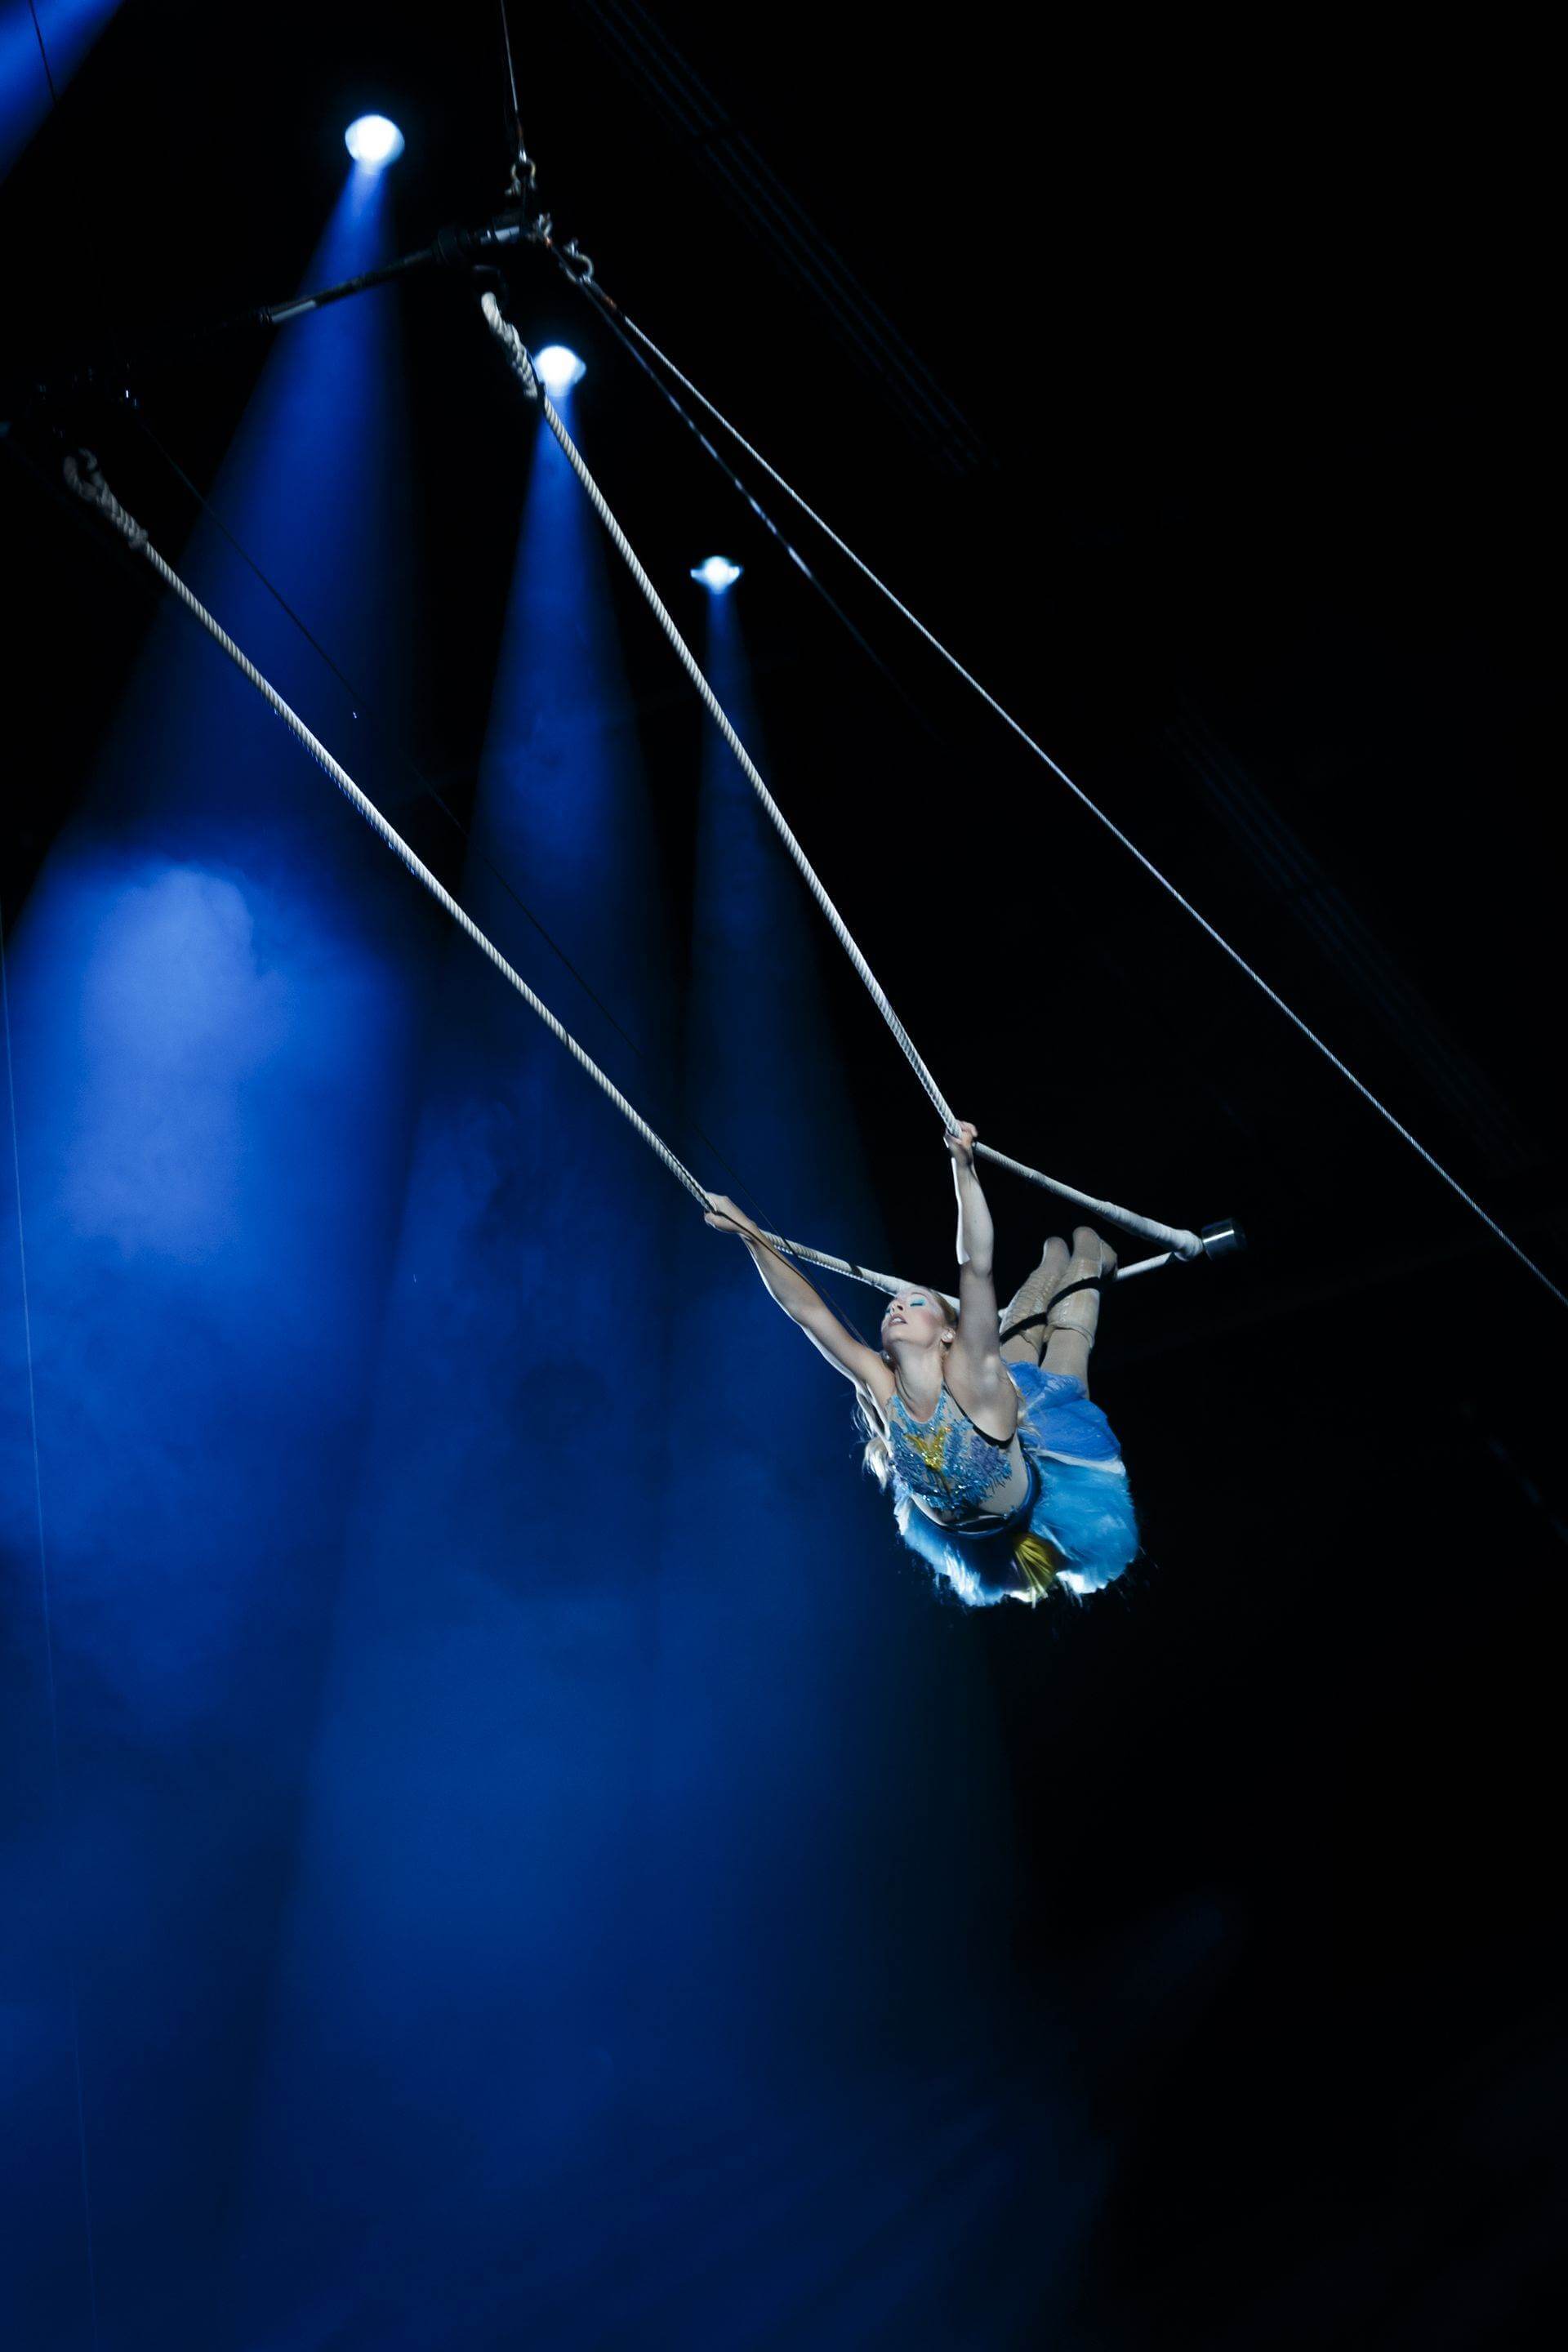 Scalada - Stelar by Cirque du Soleil 2017: Acrobacias desde el trapecio